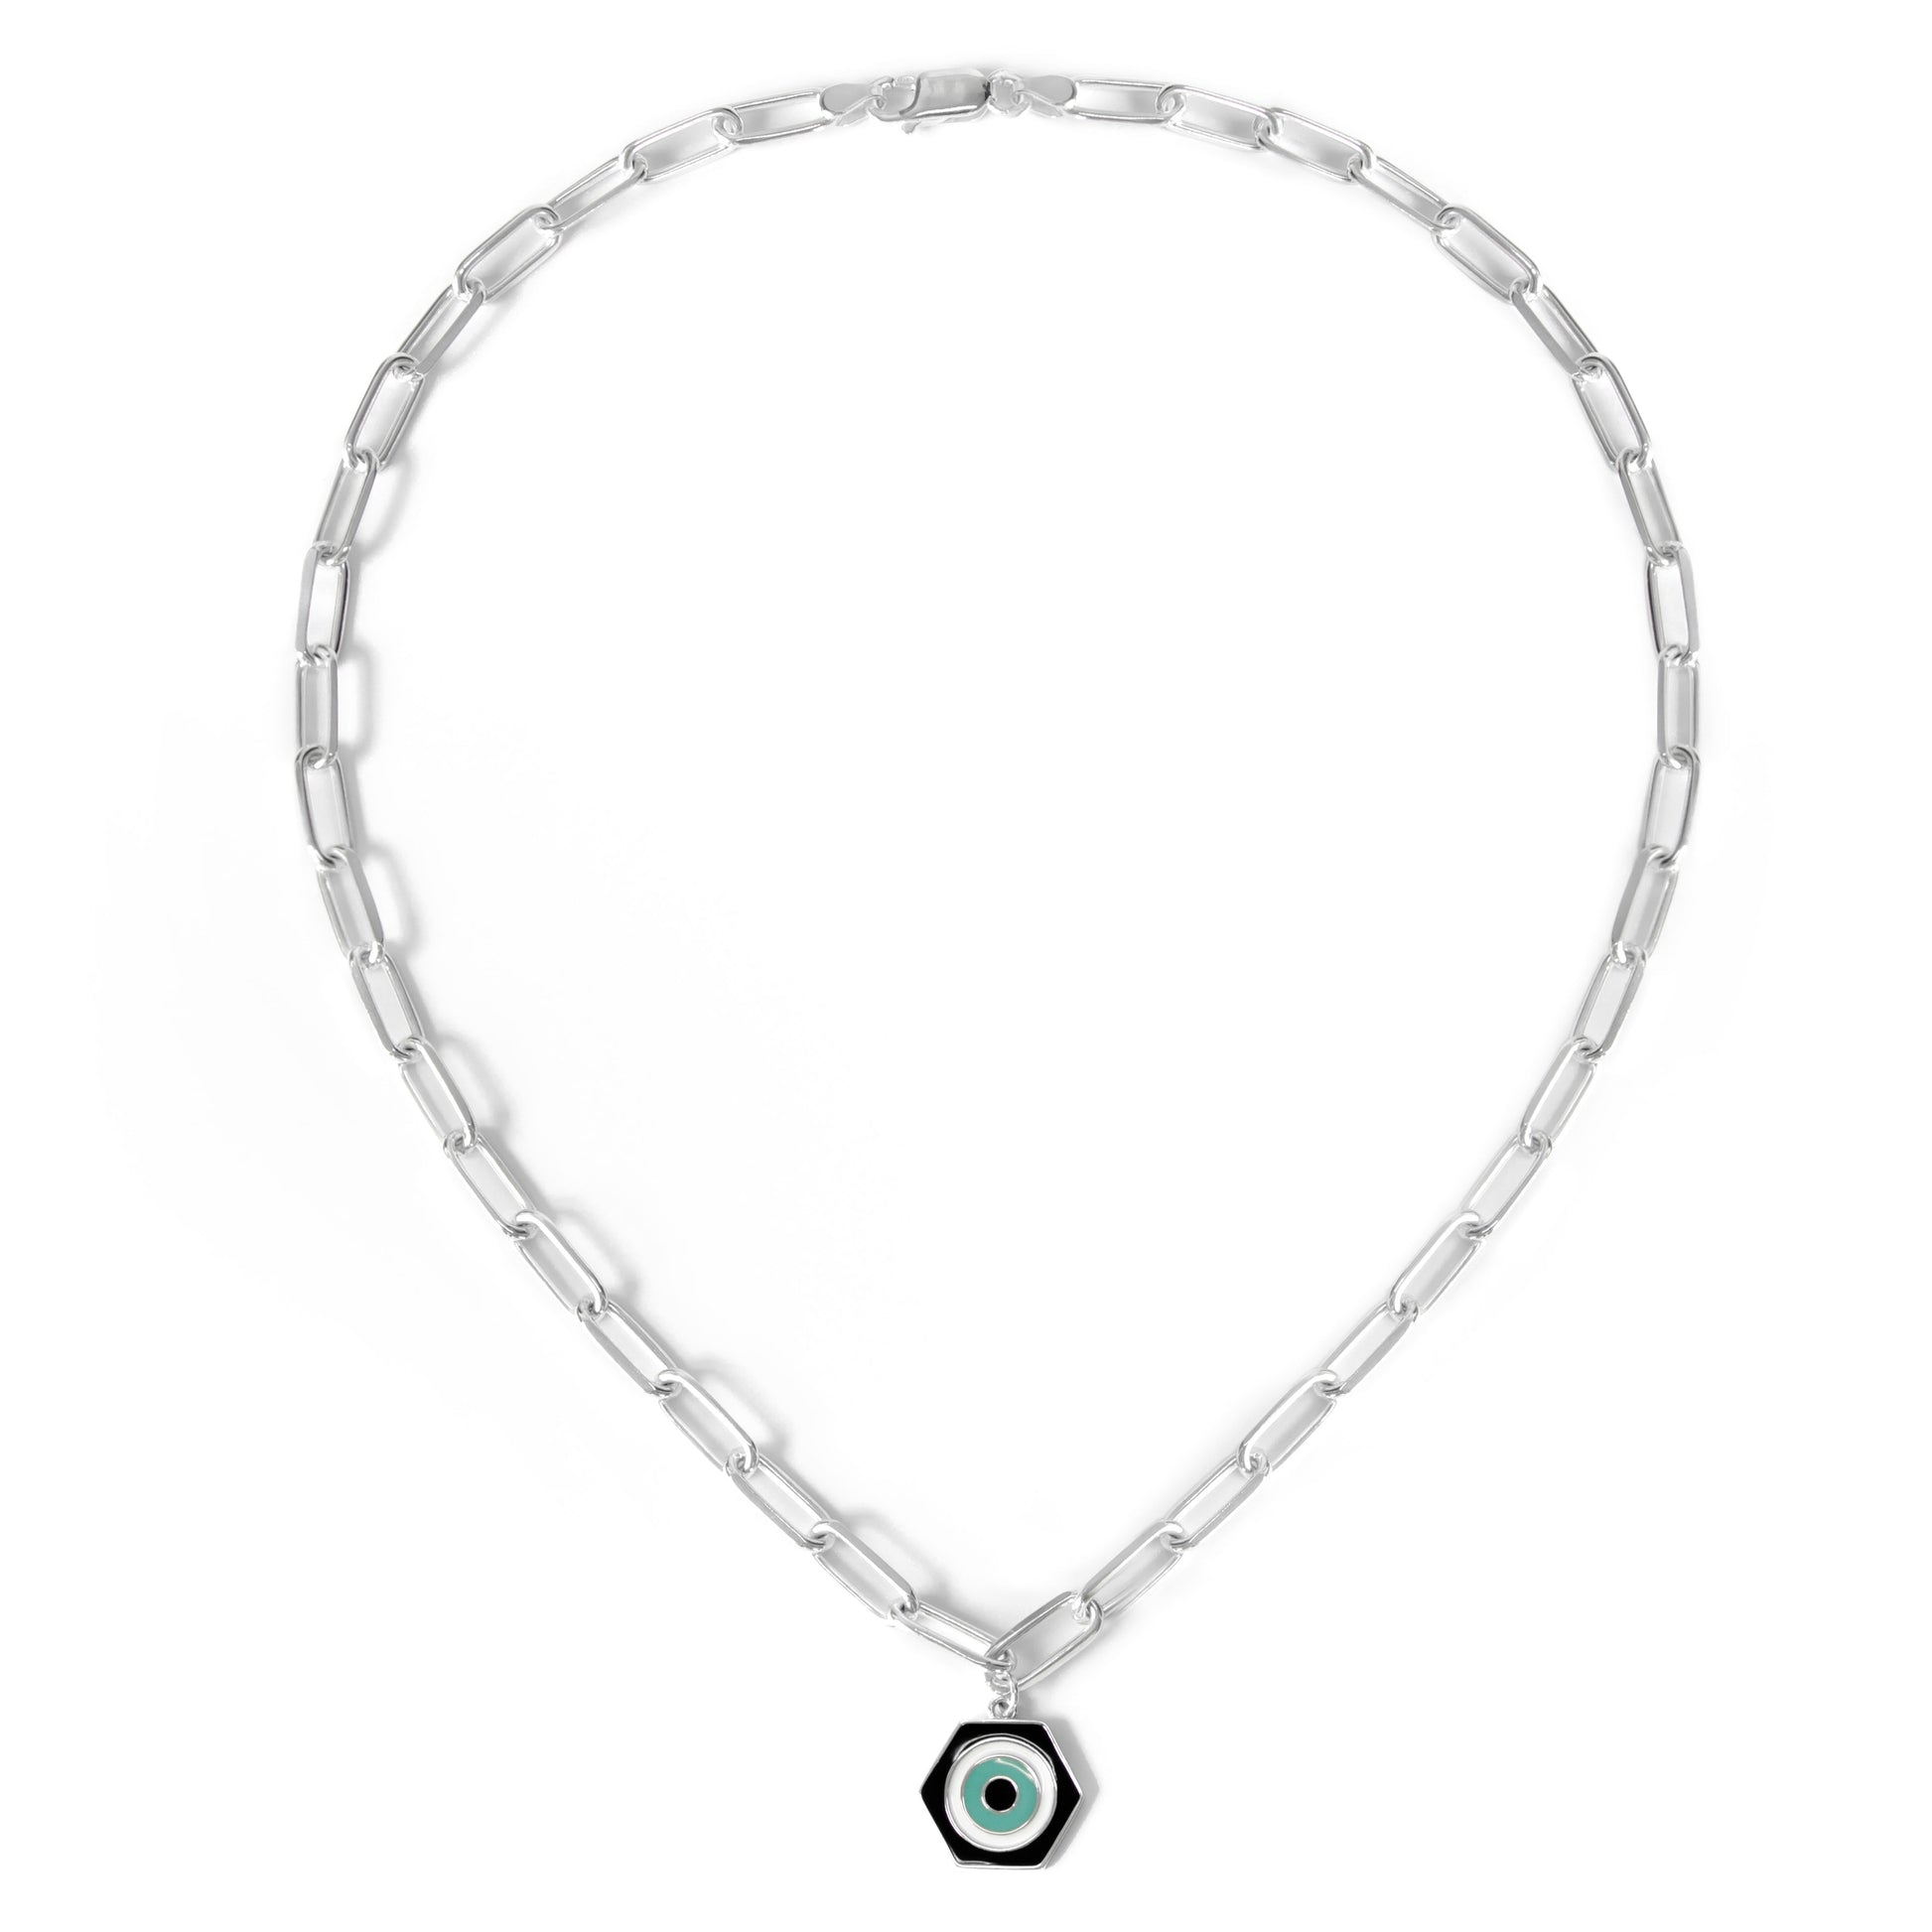 MORA bijoux collier protection symbolisée par un pendentif hexagonal émaillé de trois couleurs noir, blanc et turquoise représentant un oeil stylisé. monté sur une chaine en argent 925.